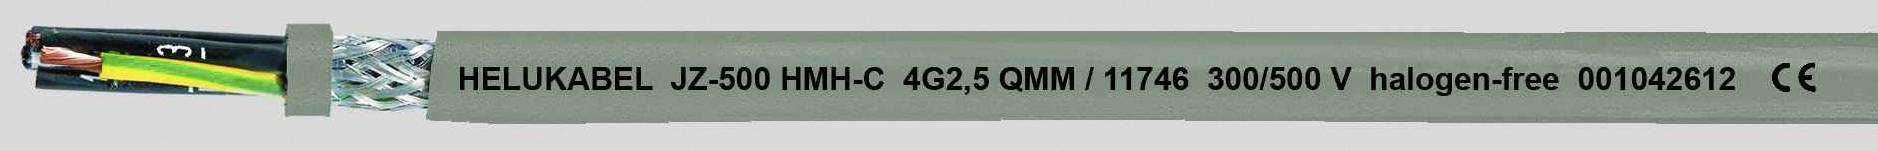 HELUKABEL JZ-500 HMH-C Steuerleitung 3 G 2.50 mm² Grau 11745-500 500 m